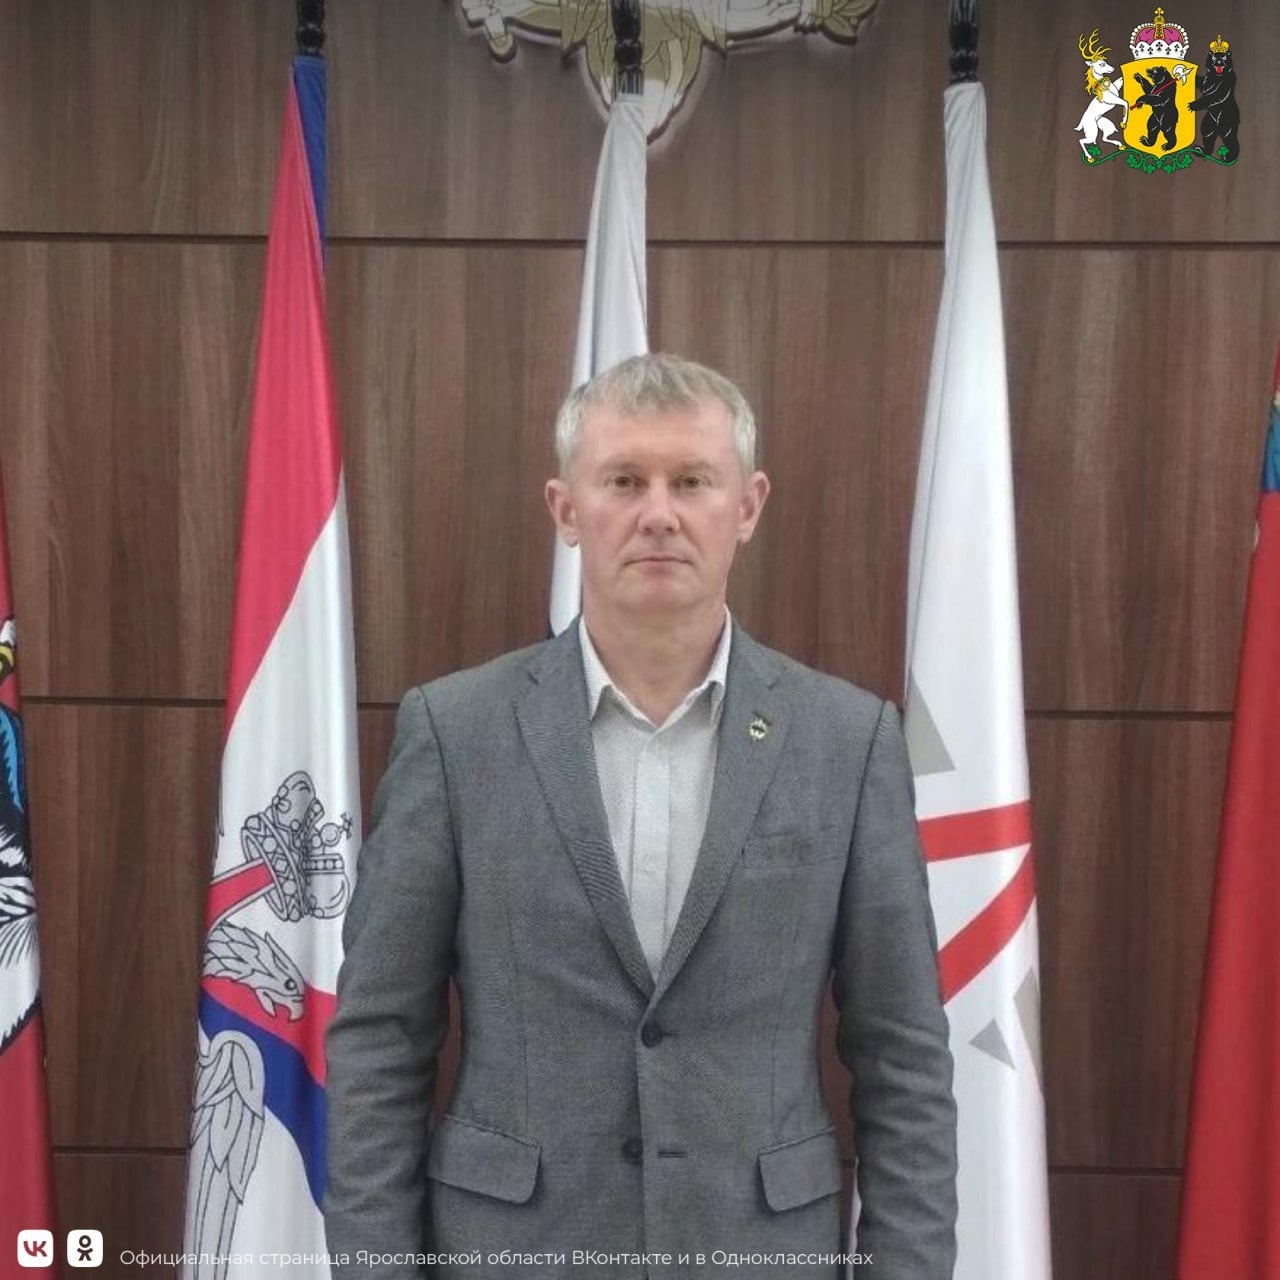 Директор школы имени Родионова Ростовского района отправился добровольцем на СВО